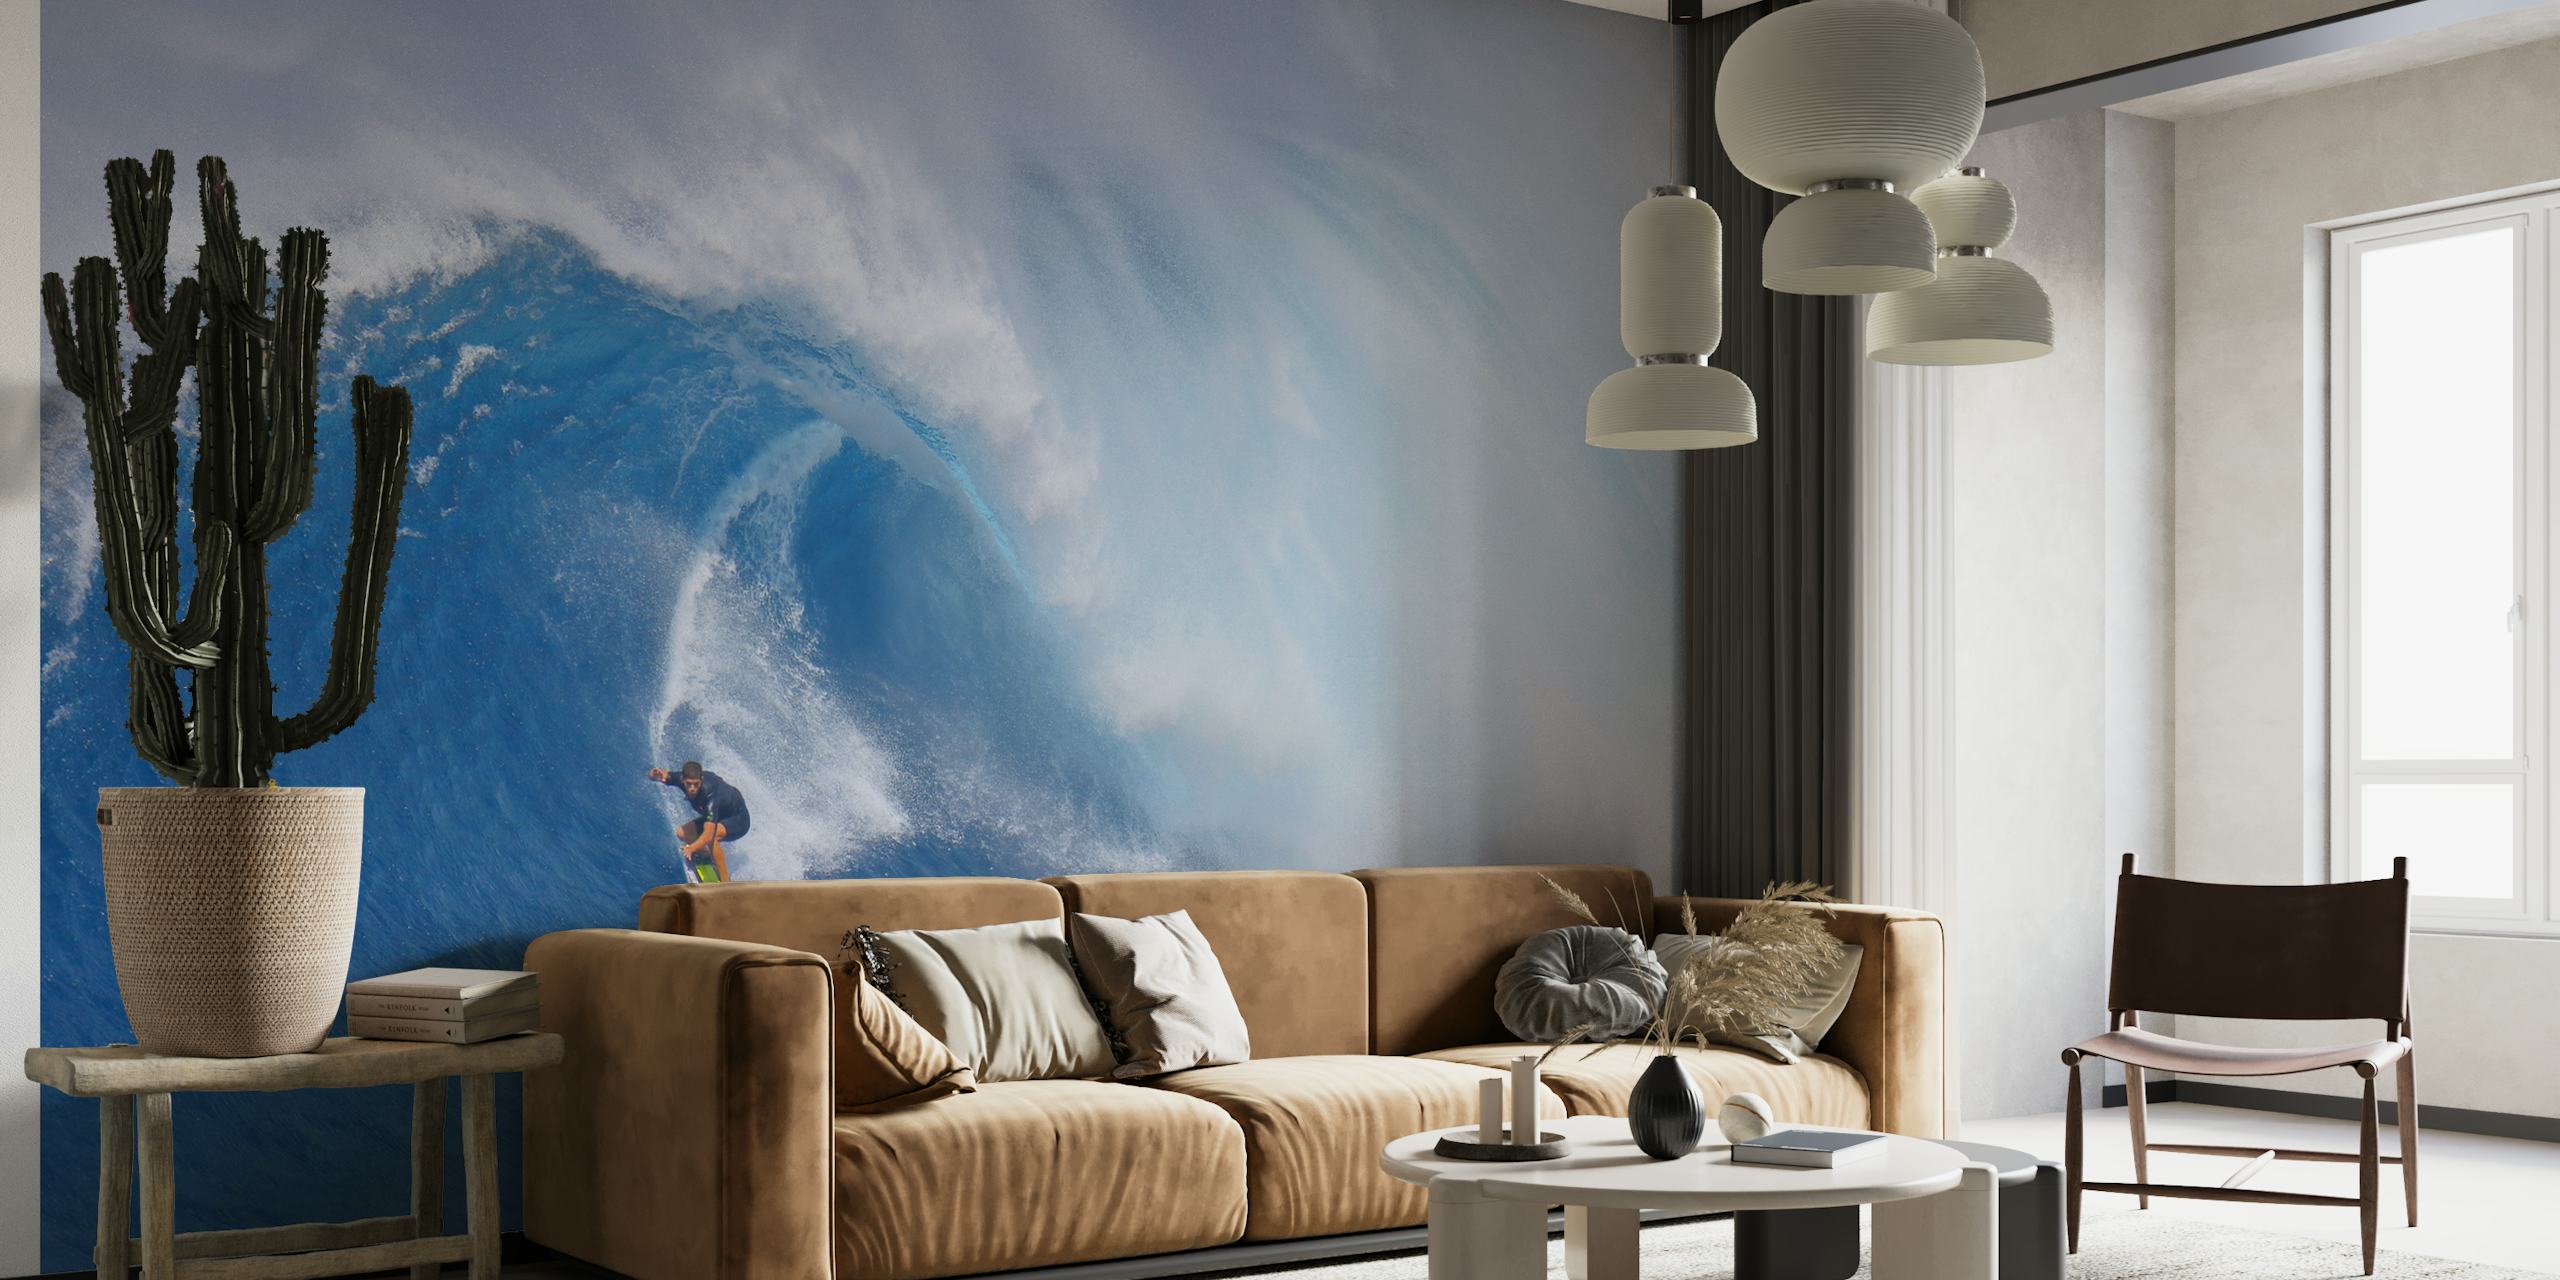 Surfař jedoucí na obří vlně v nástěnné malbě „Surfing Jaws“.